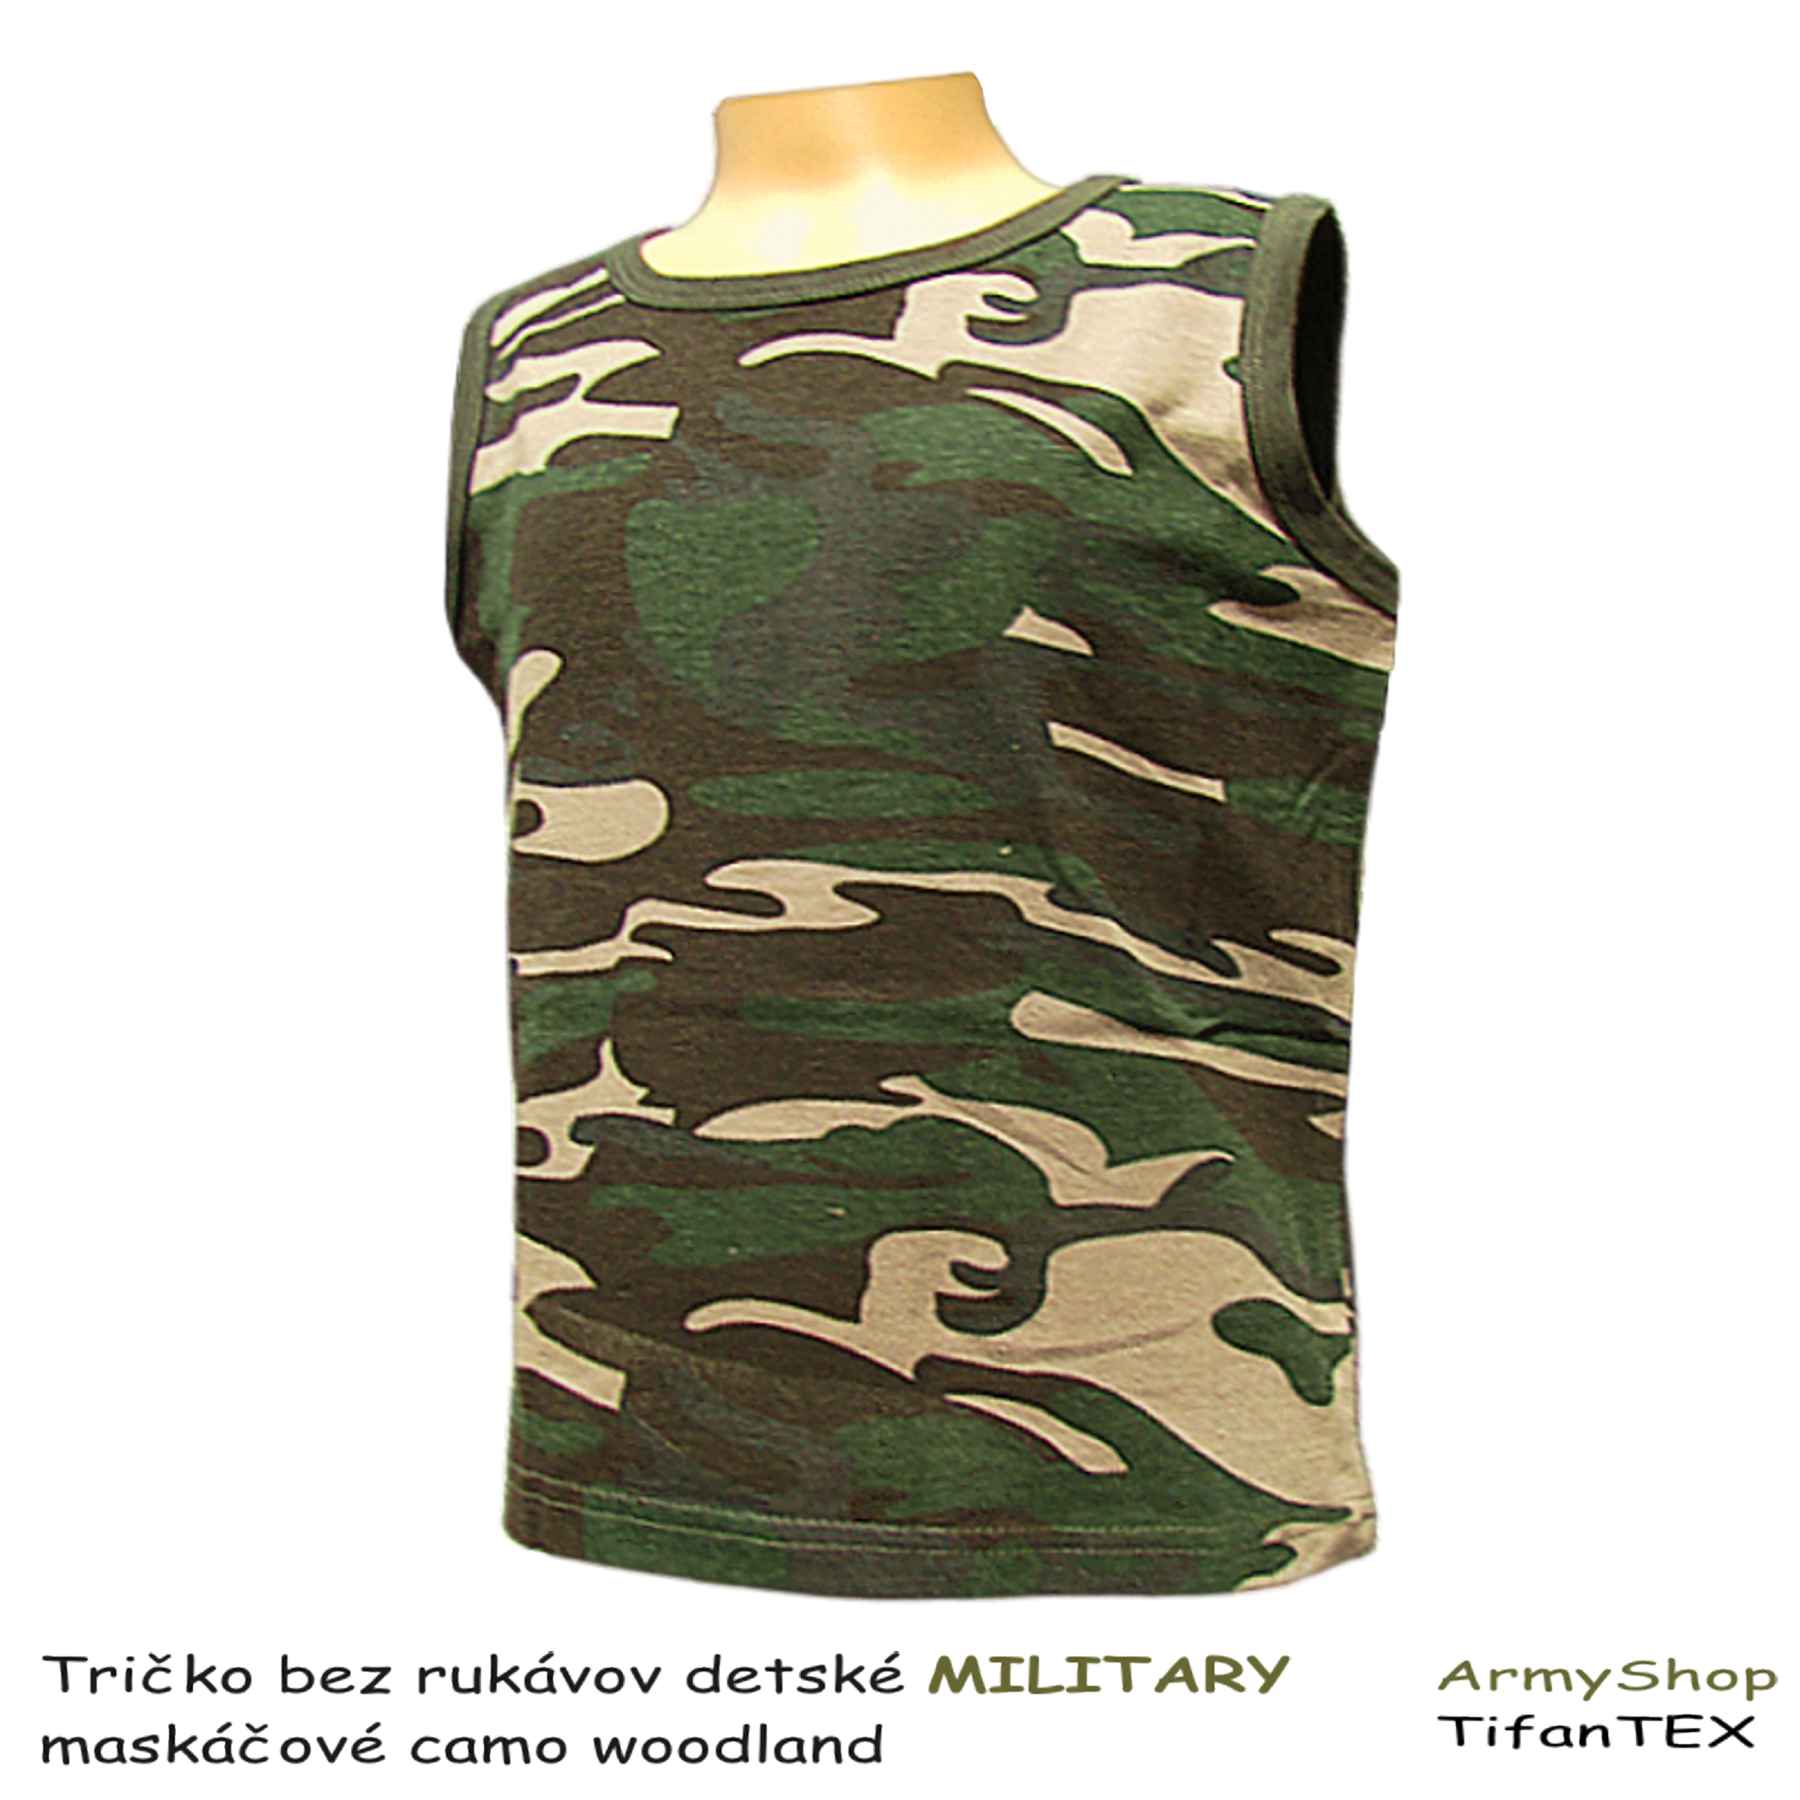 maskáčové tričko bez rukávov detské MILITARY M1 woodland, Tifantex odevy